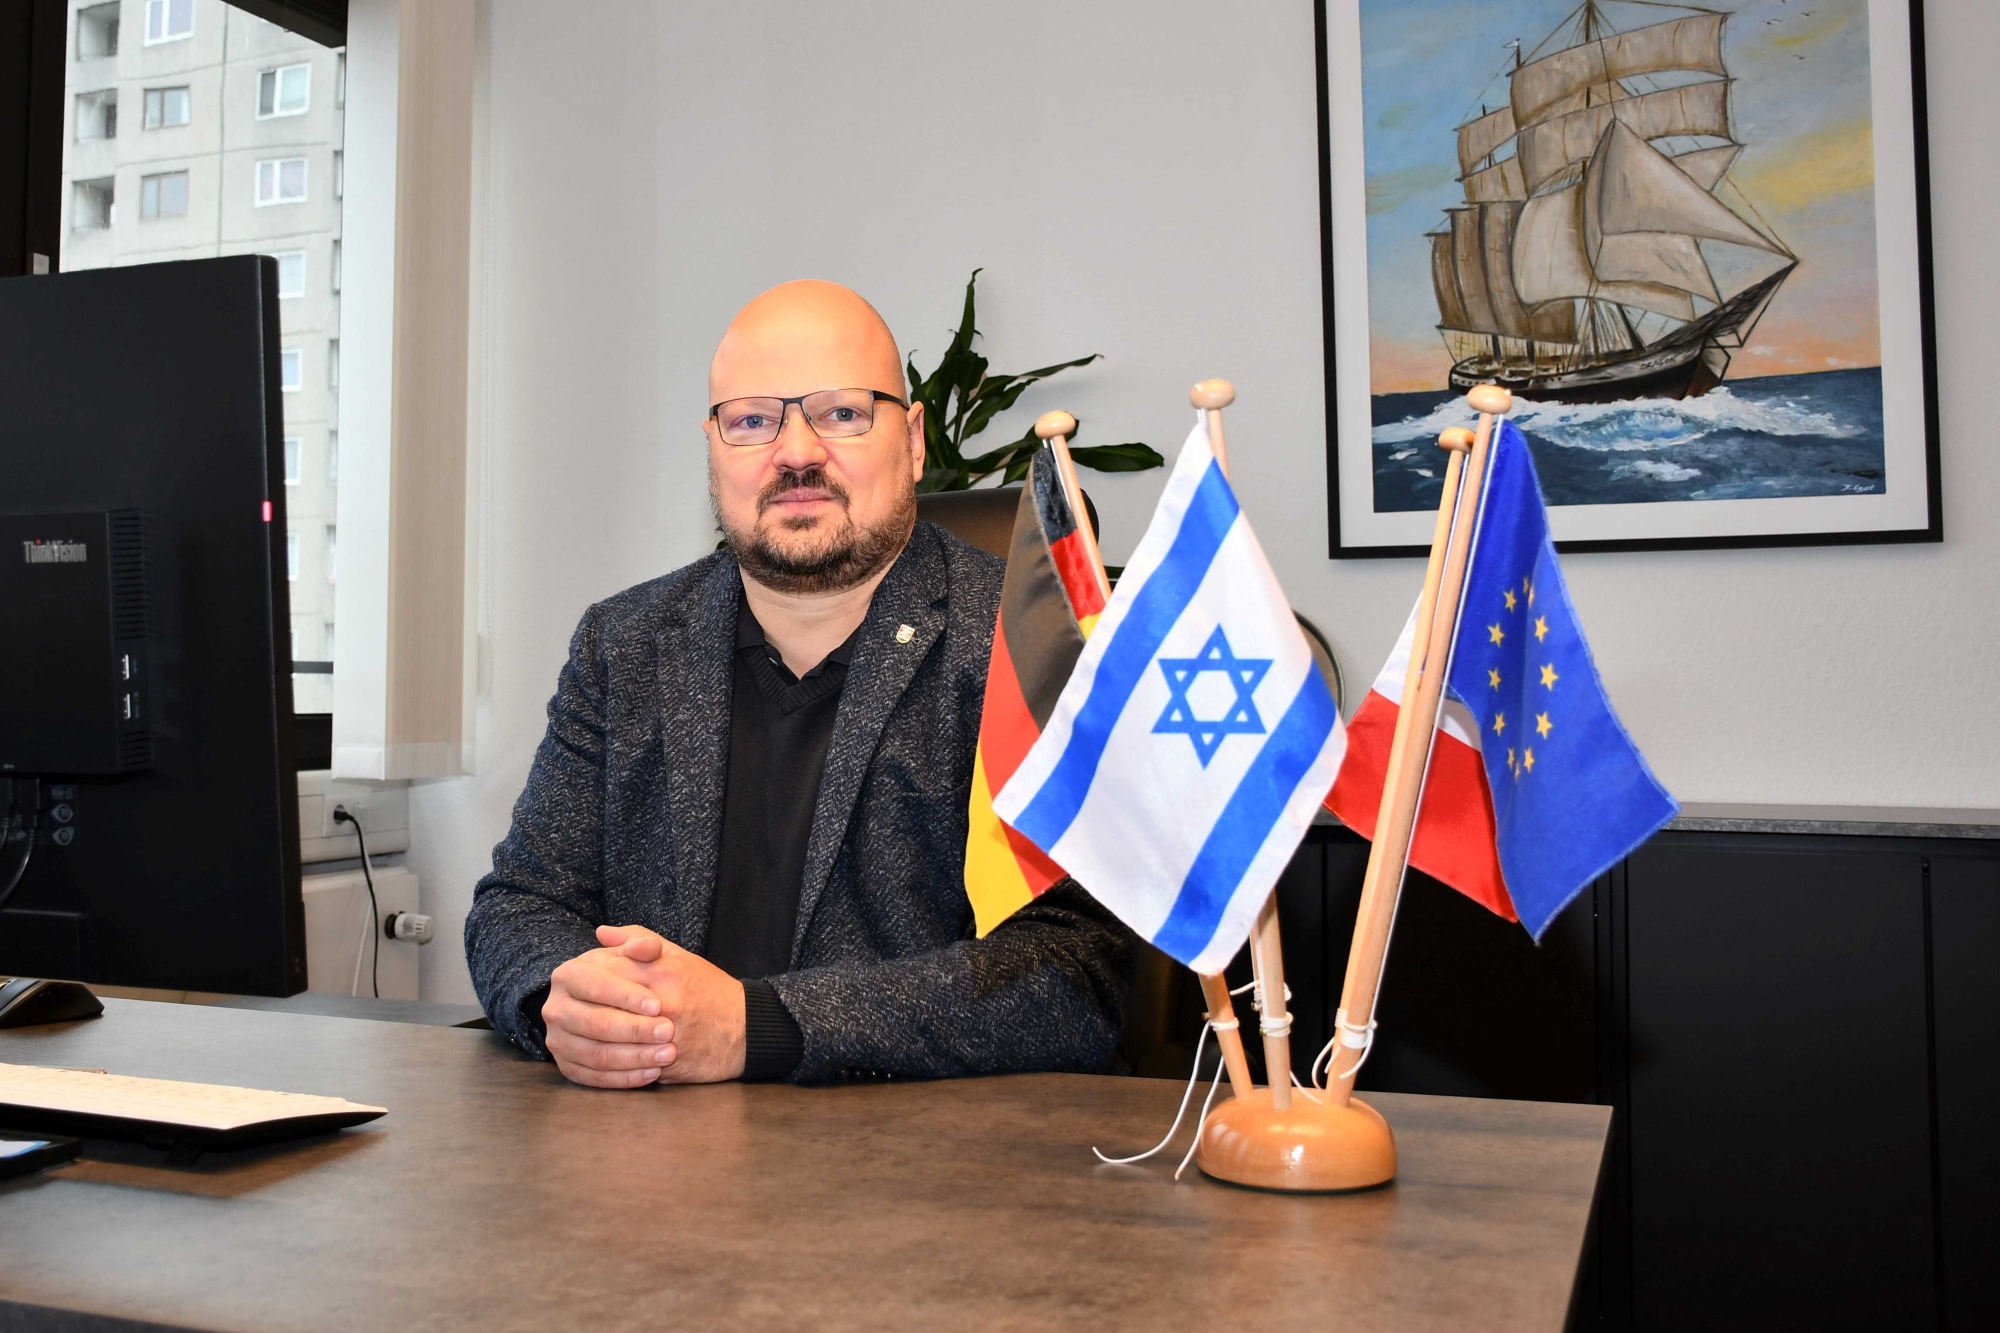 Bürgermeister Kai Eggert sitzt ernst an seinem Schreibtisch, auf dem ein Tischflaggenset mit der israelischen Flagge steht.